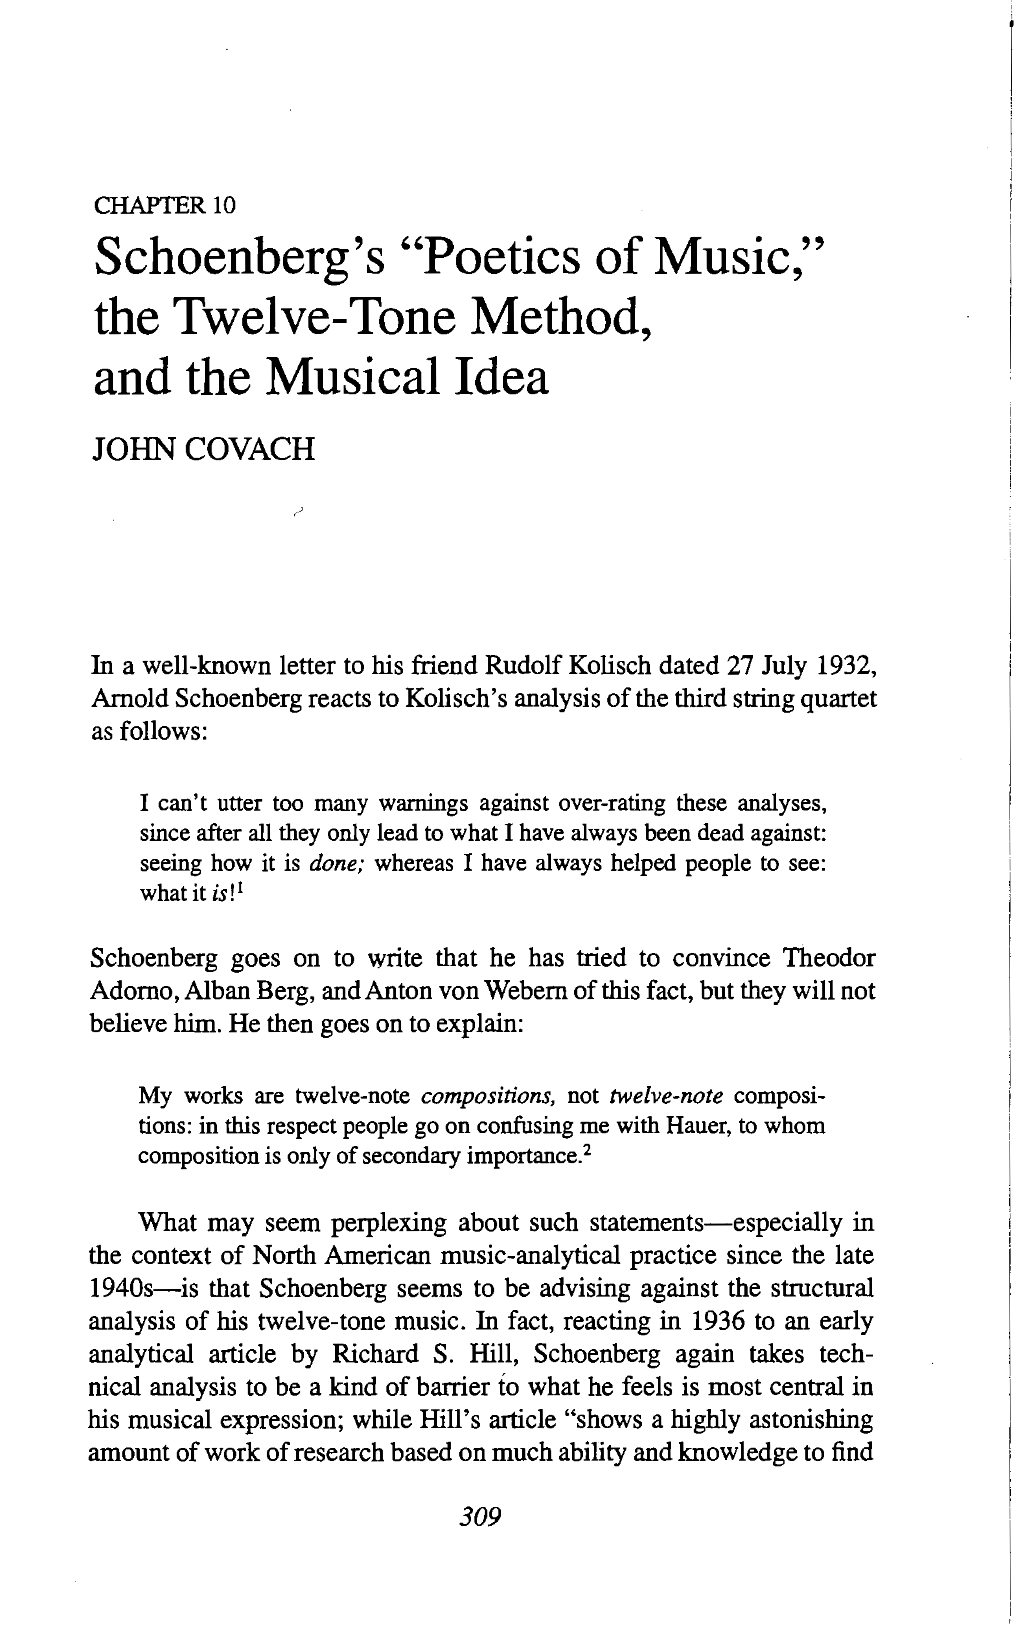 Schoenberg's "Poetics of Music," the Twelve-Tone Method, and The